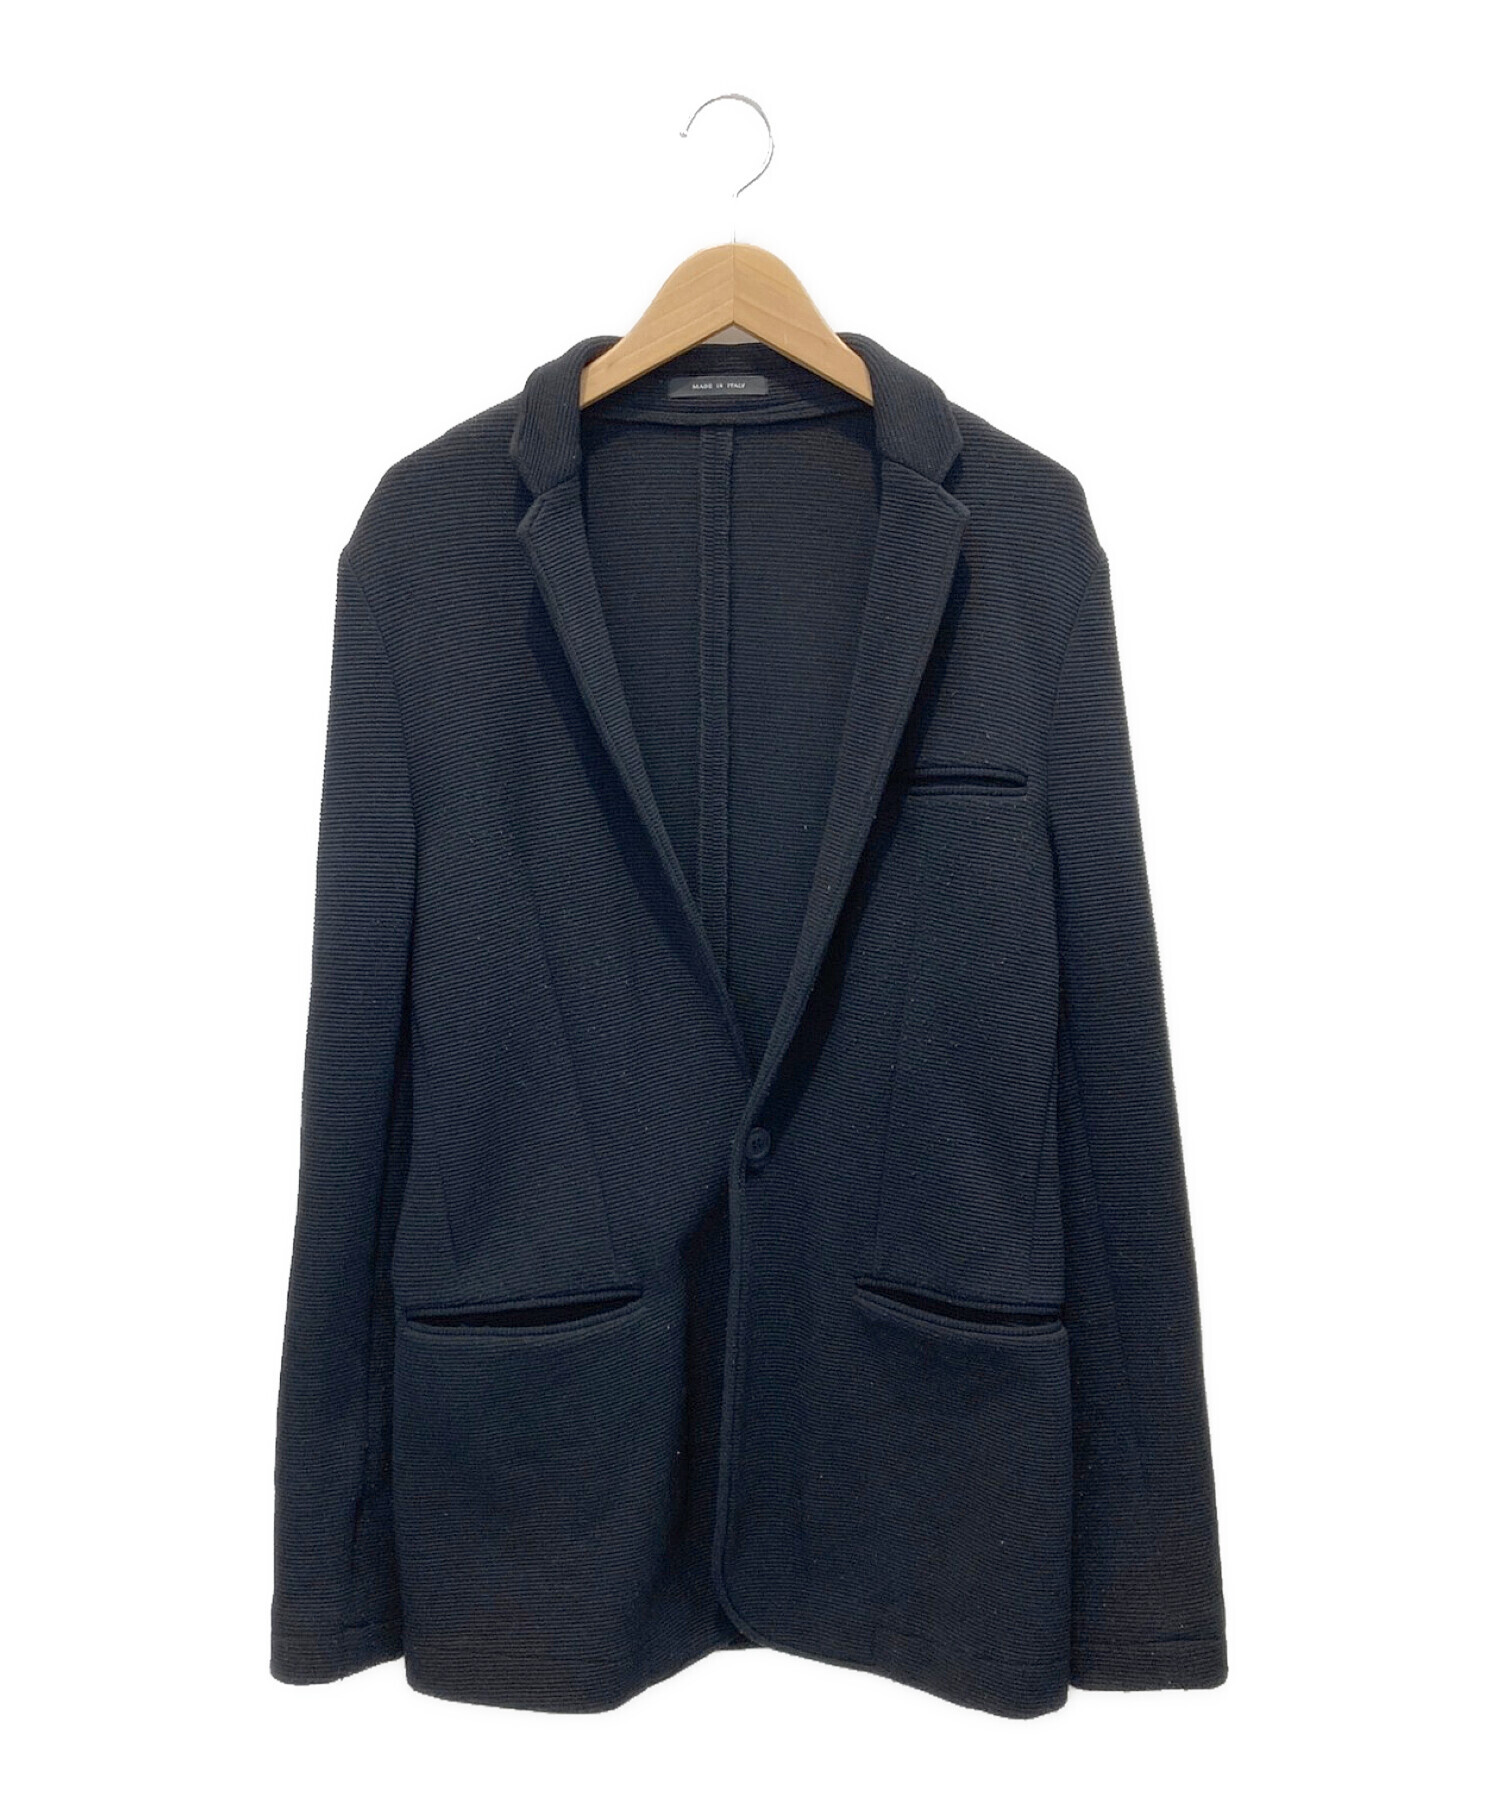 EMPORIO ARMANI (エンポリオアルマーニ) ニットジャケット ブラック サイズ:L